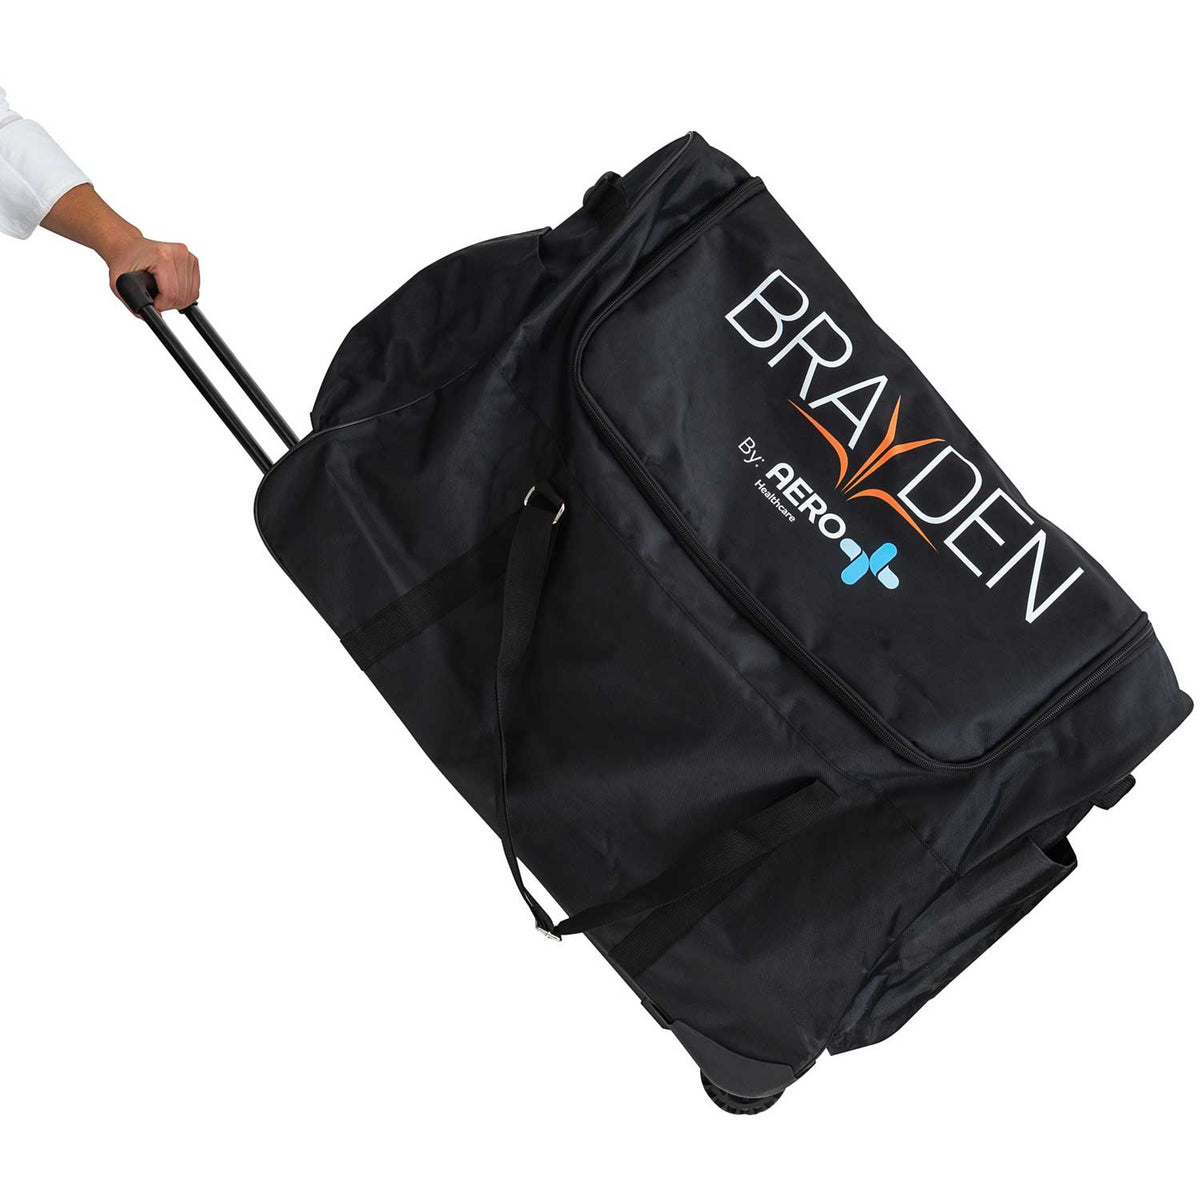 Brayden Manikin Trolley Bag for 4 - American Hospital Supply